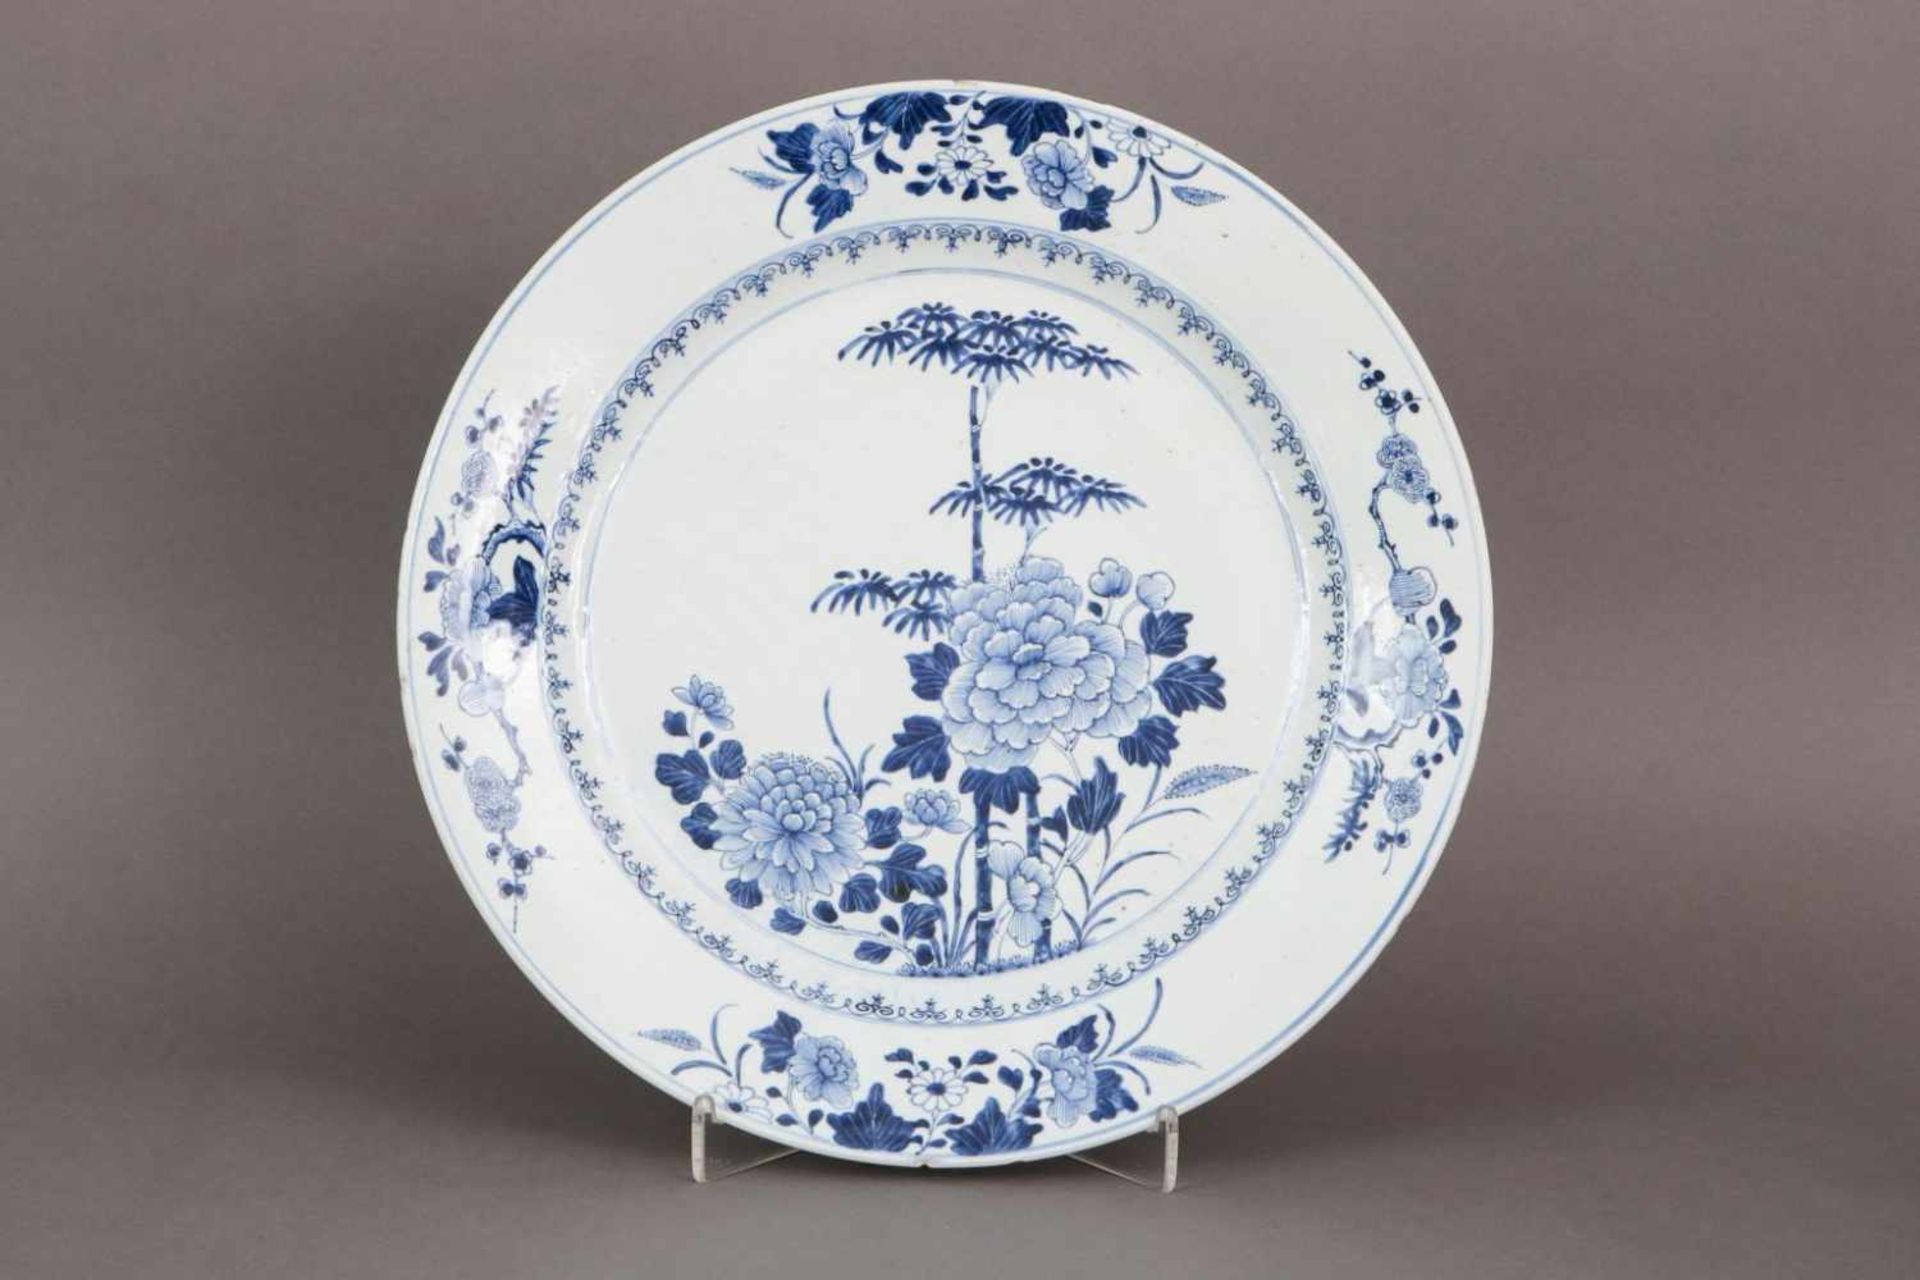 Chinesischer TellerPorzellan, weiß glasierter, runder Teller mit asiatischer Blaumalerei ¨Päonien